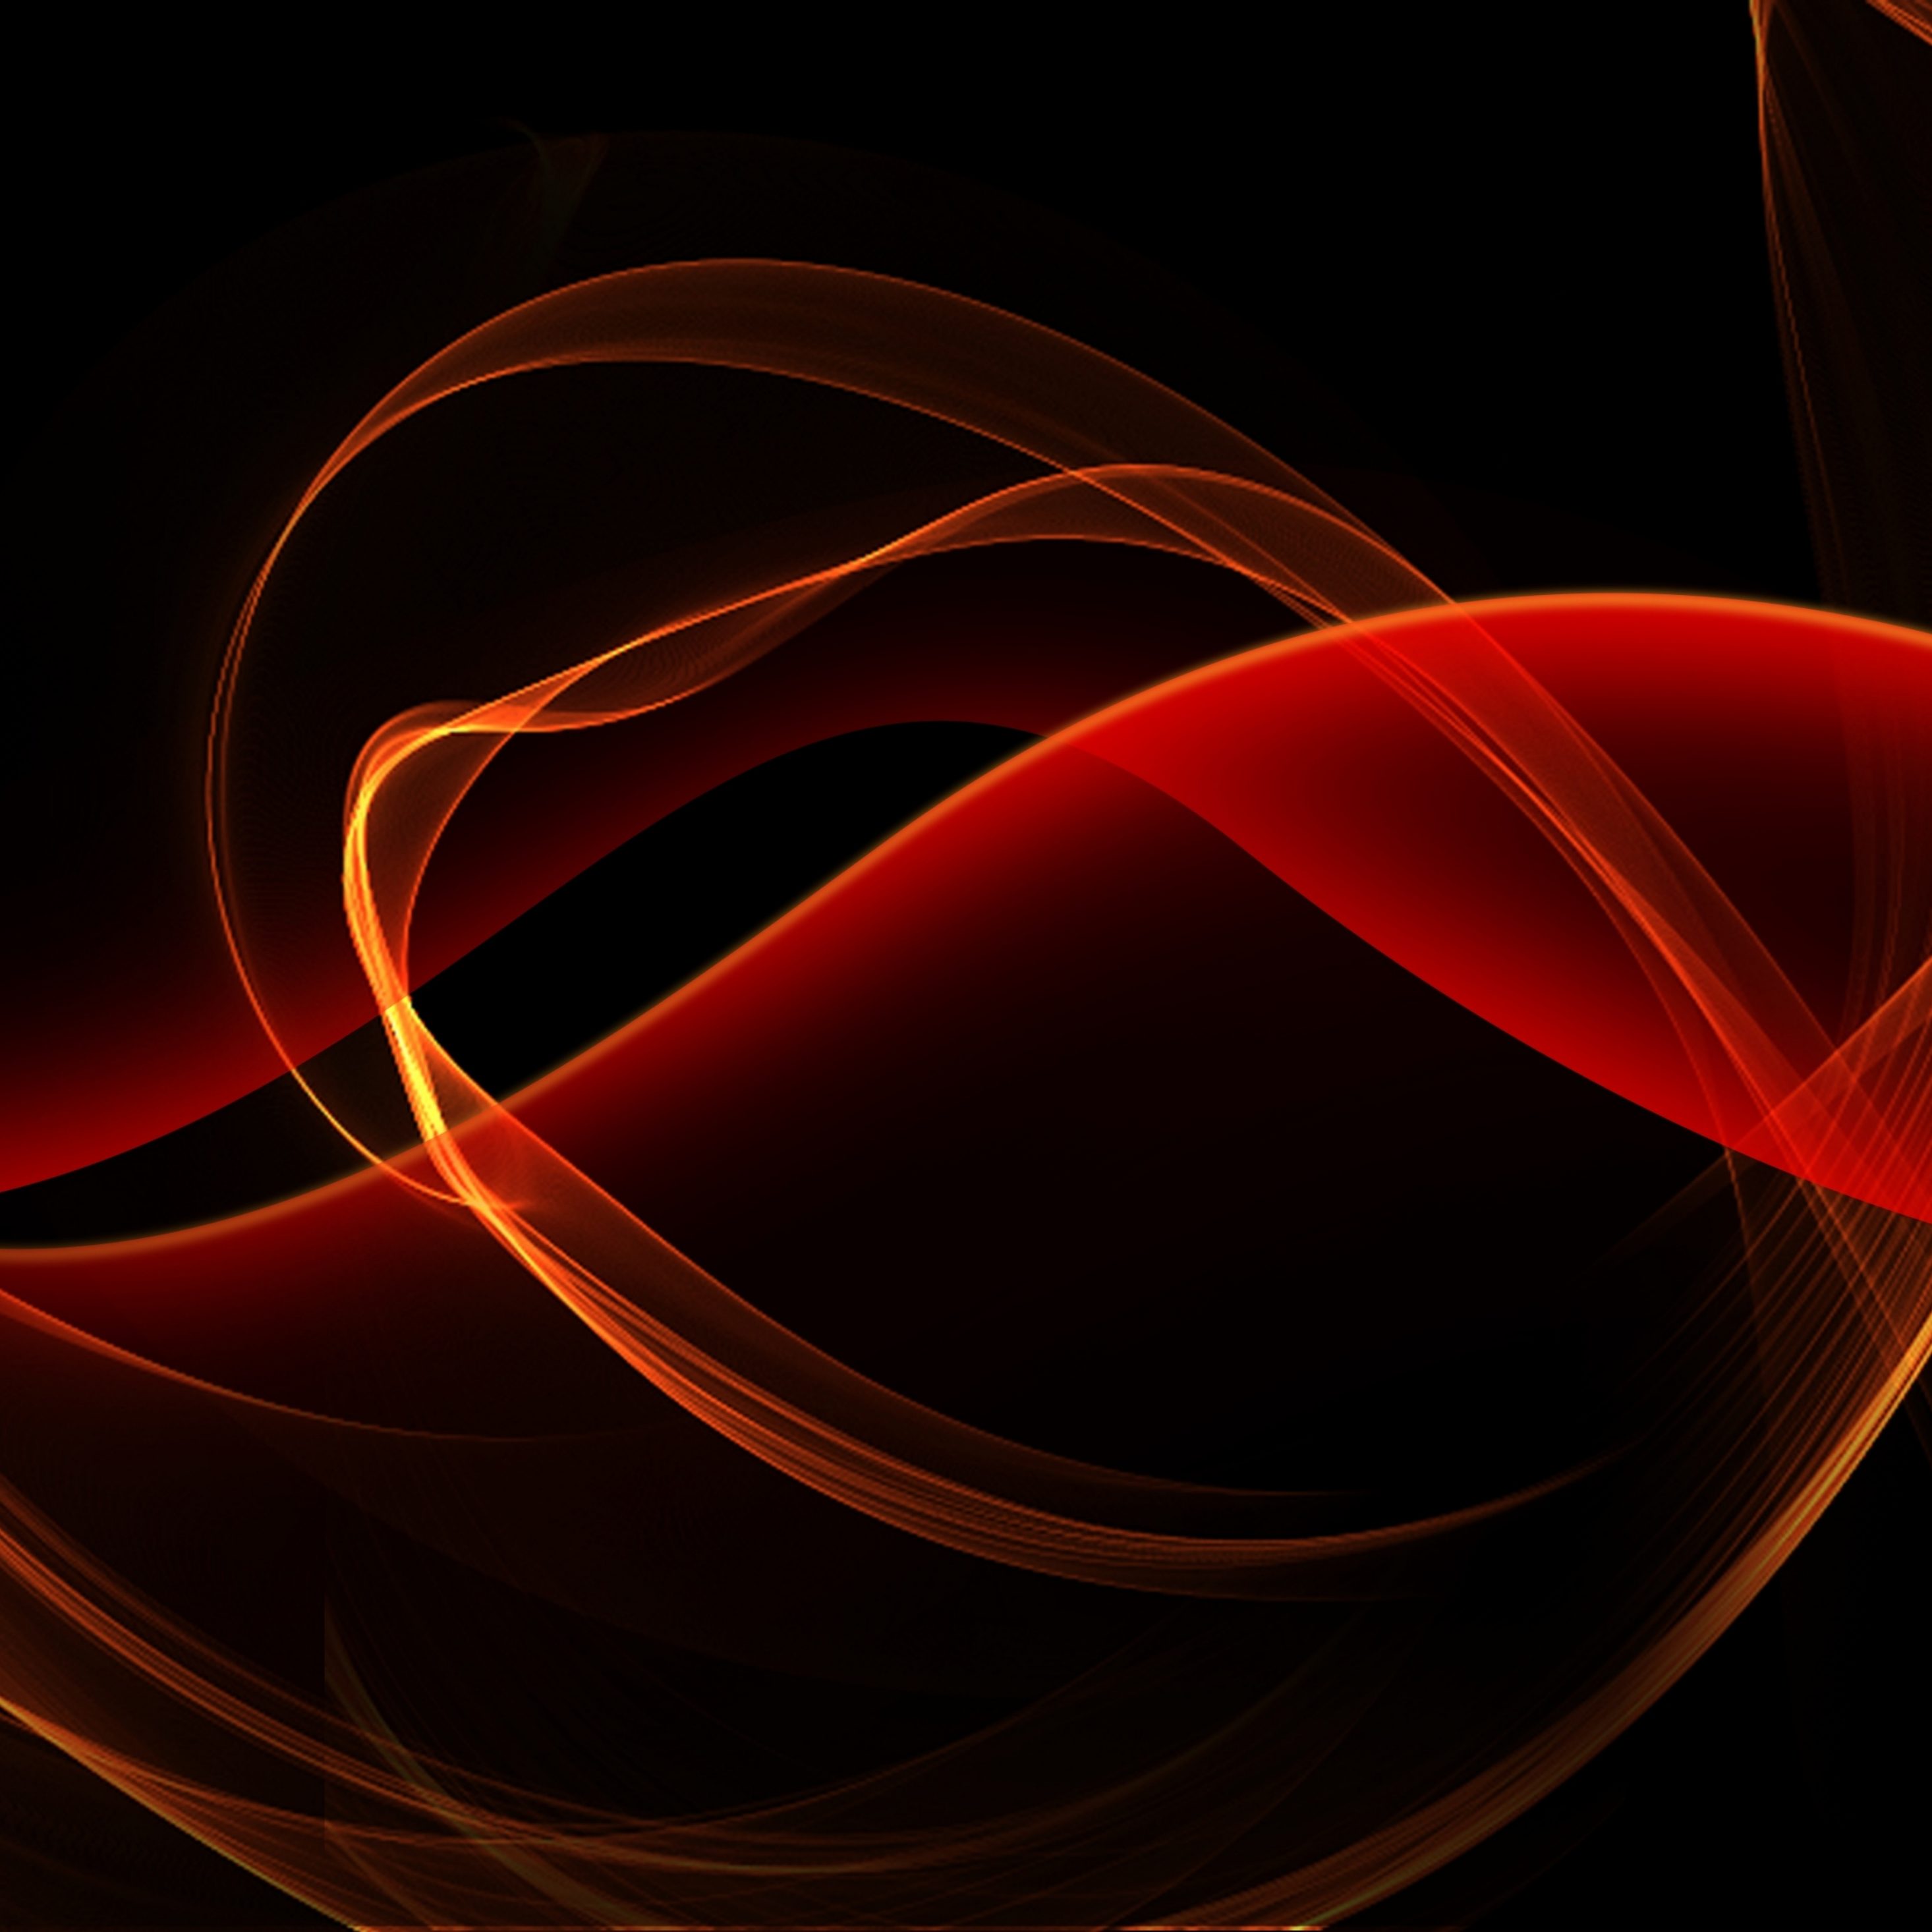 2932x2932 iPad Pro wallpaper 4k Black and Red Glowing Curves iPad Wallpaper 2932x2932 pixels resolution